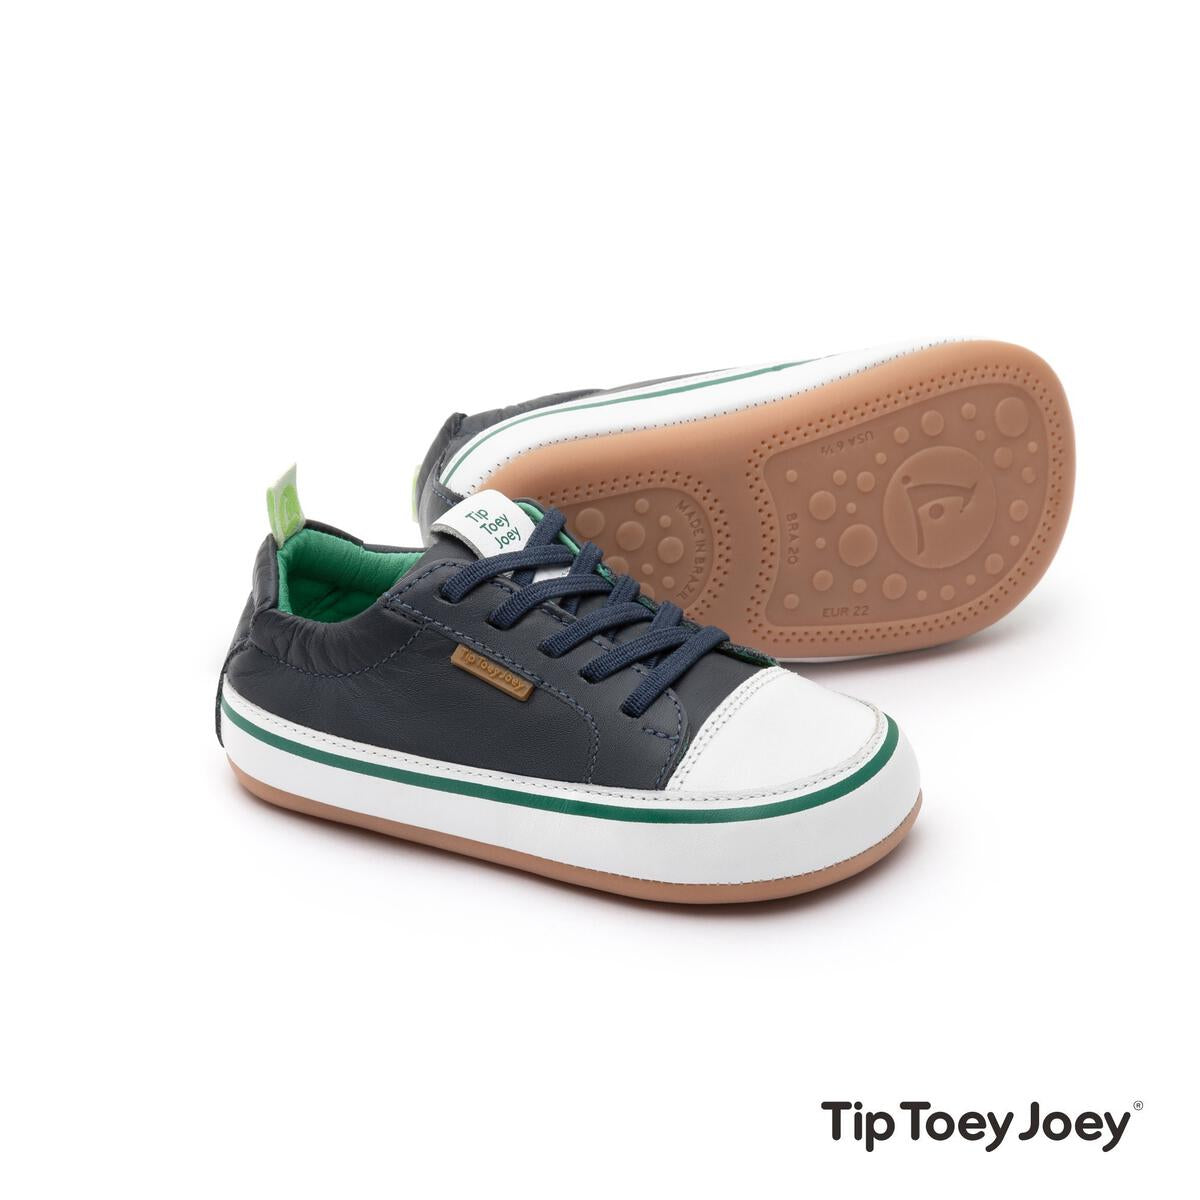 Funky es el modelo de zapatilla más antigüo y el más querido de la marca Tip Toey Joey, que nos sorprende año tras año en cada temporada con nuevos y divertidos colores.